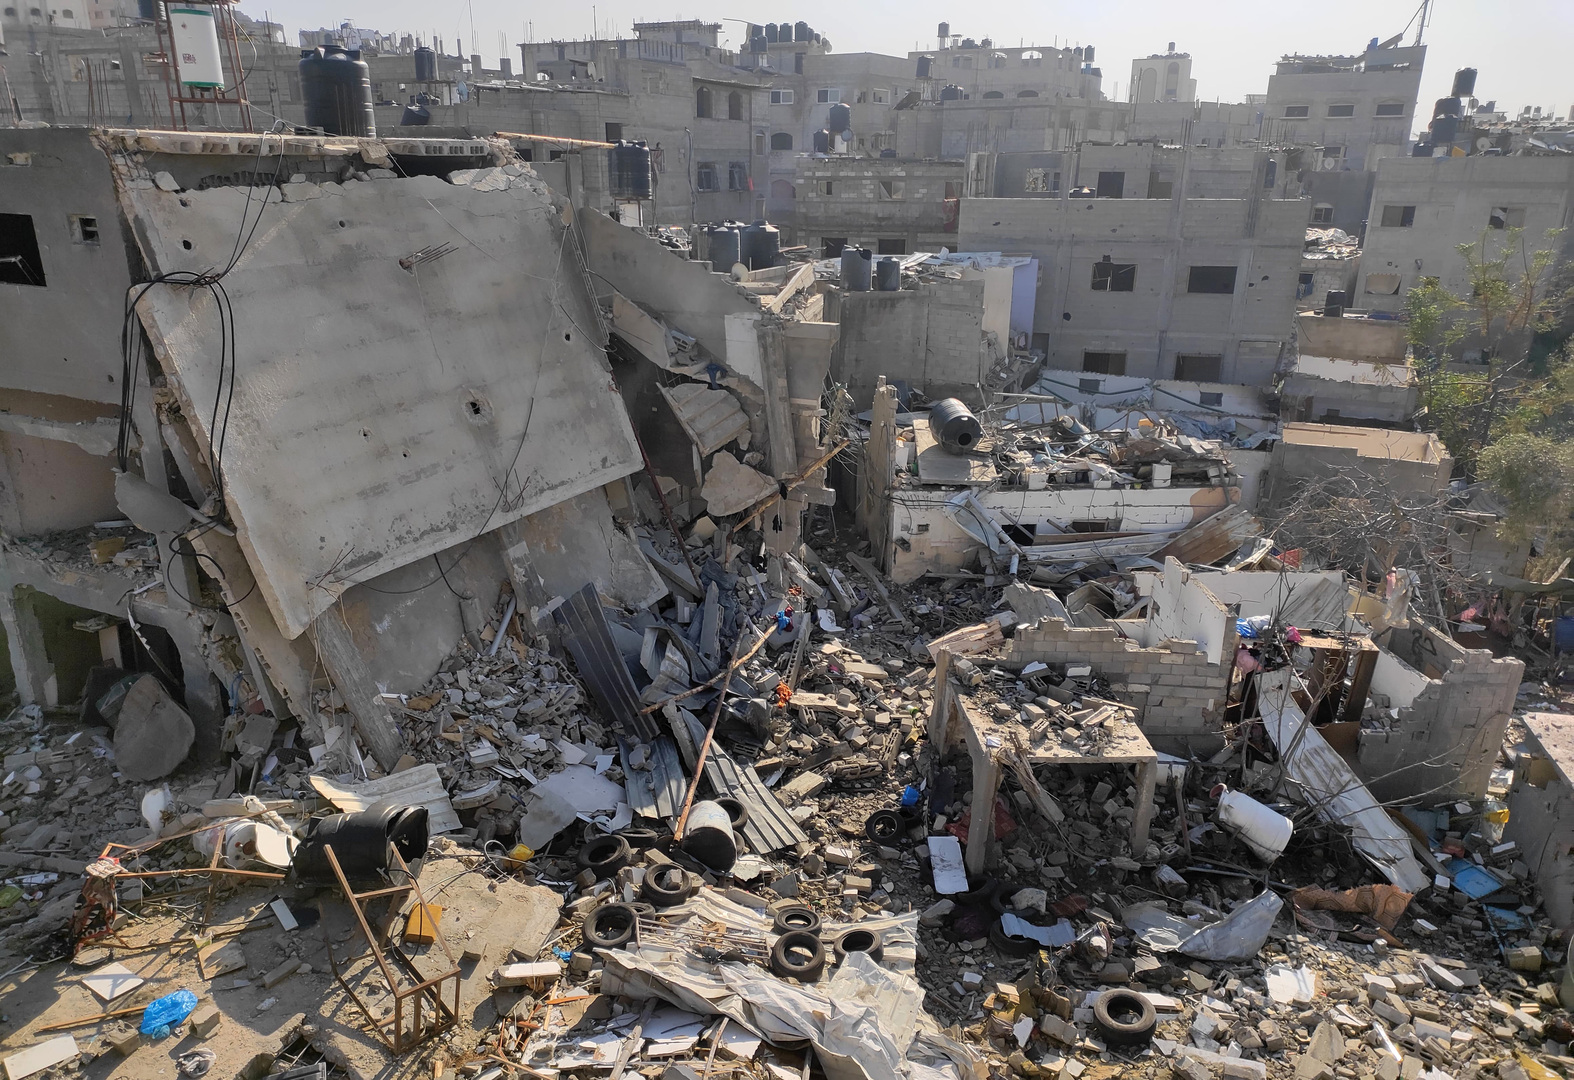 المكتب الإعلامي الحكومي في غزة: المجتمع الدولي يتحمل مسؤولية استمرار الحرب الإسرائيلية على قطاع غزة